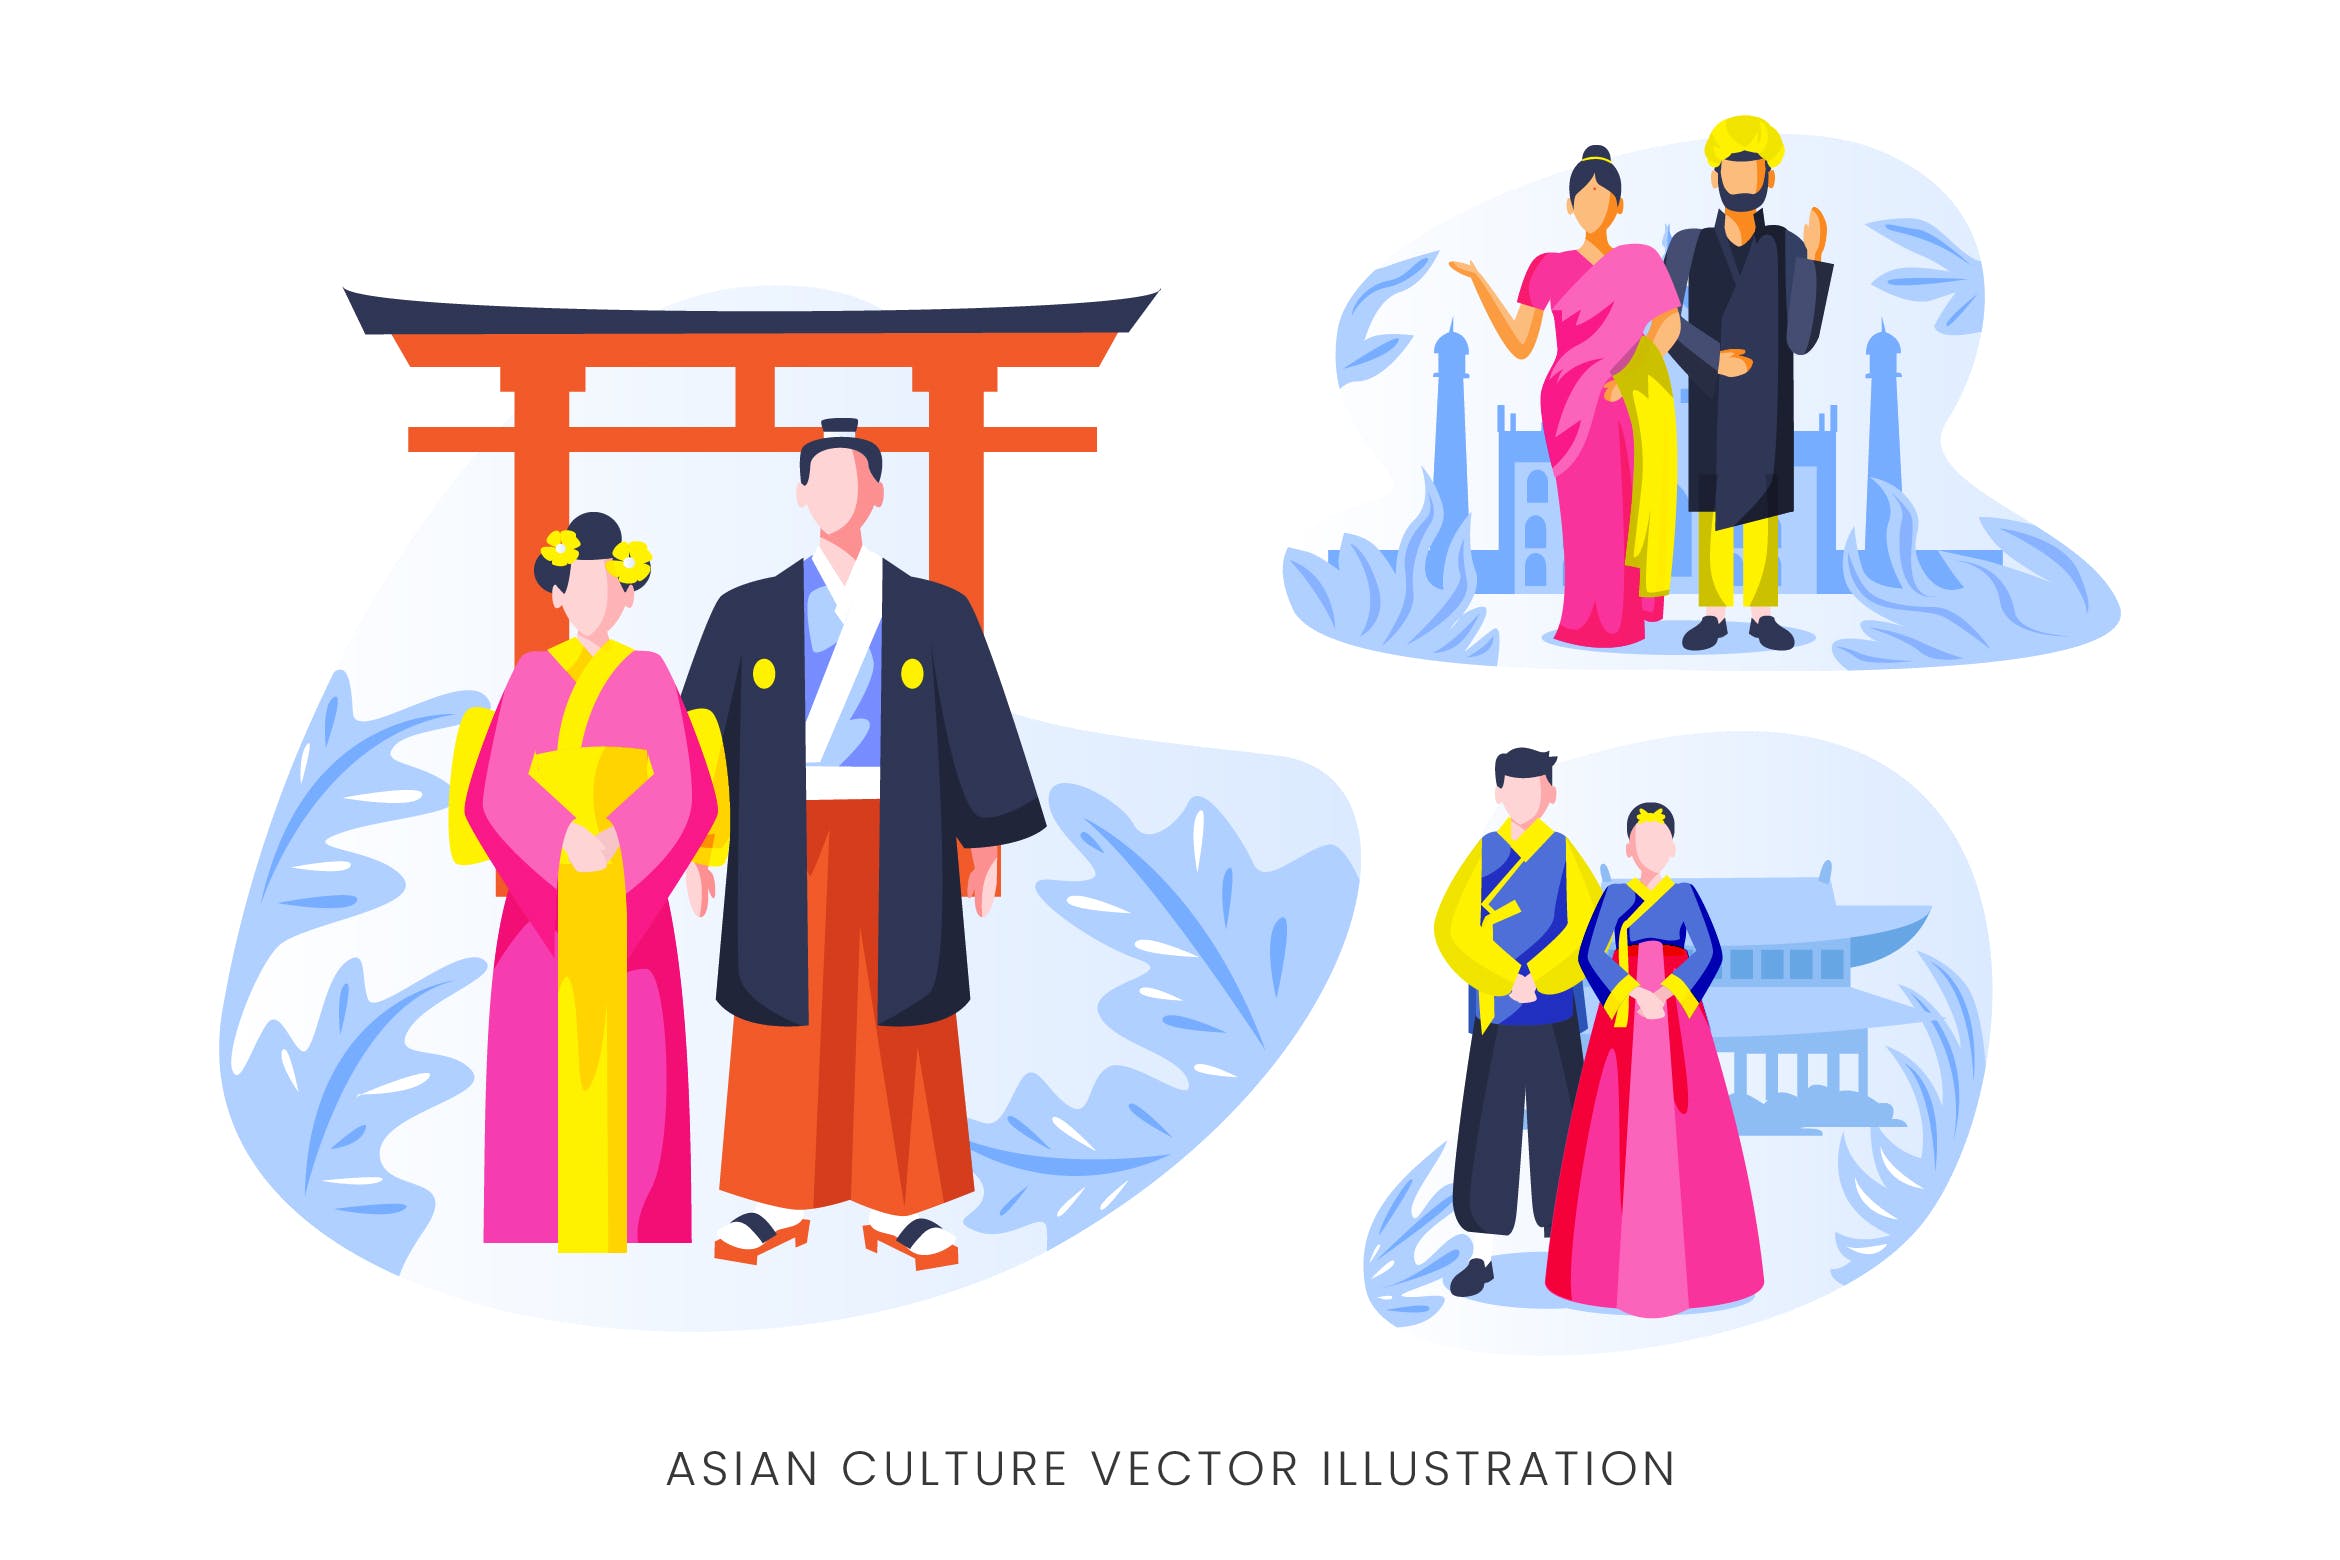 亚洲文化人物形象第一素材精选手绘插画矢量素材 Asian Culture Vector Character Set插图